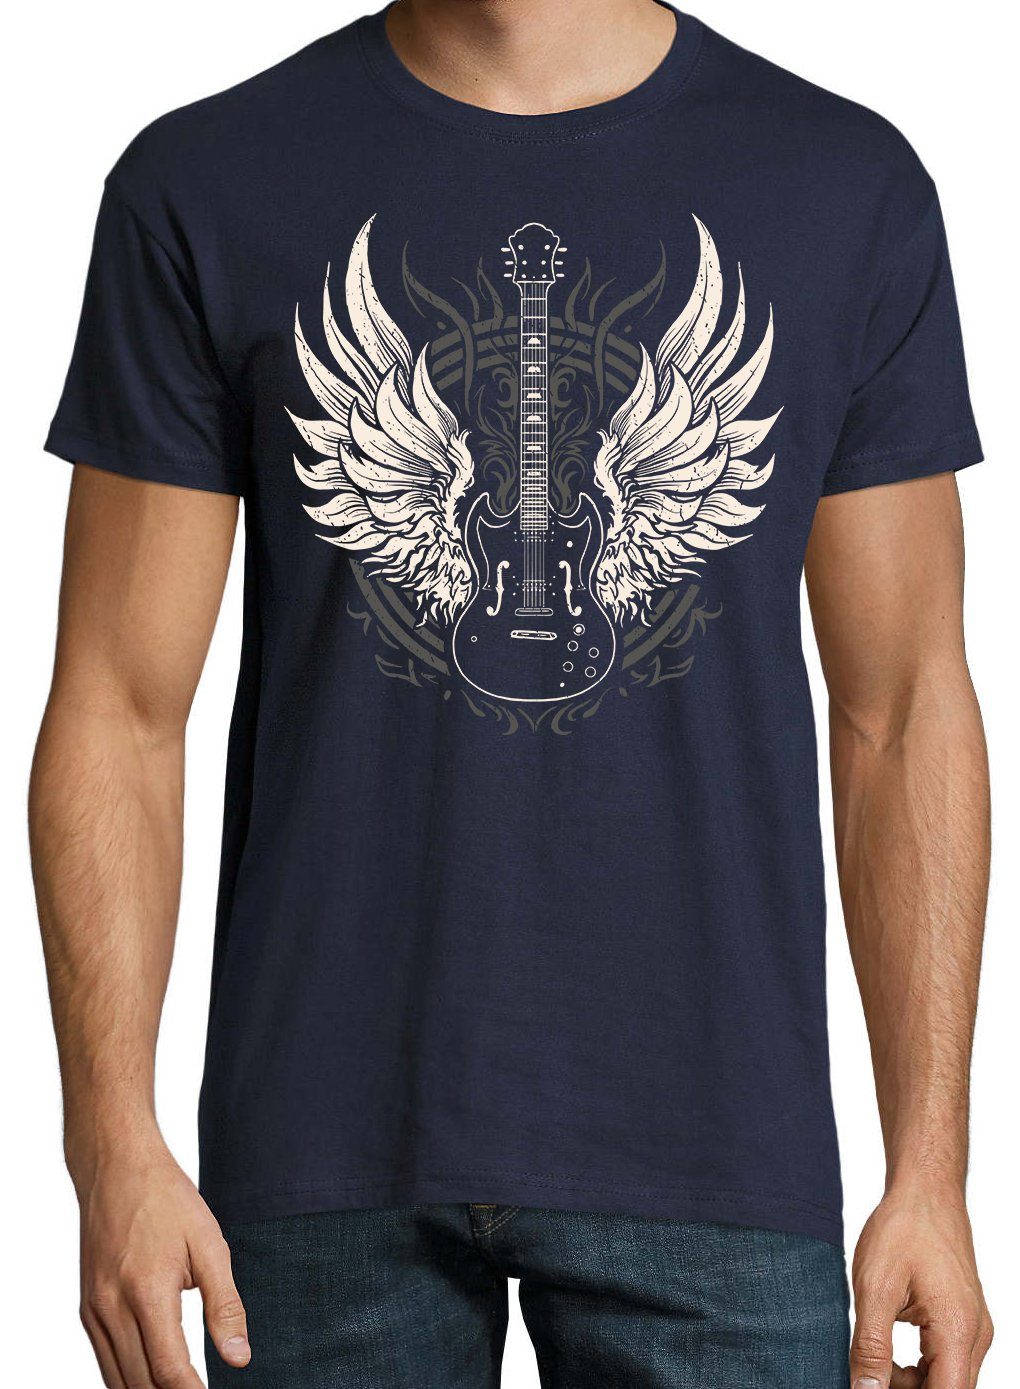 mit Herren T-Shirt GitarreFlügel Spruch Navyblau Youth Designz lustigem T-Shirt